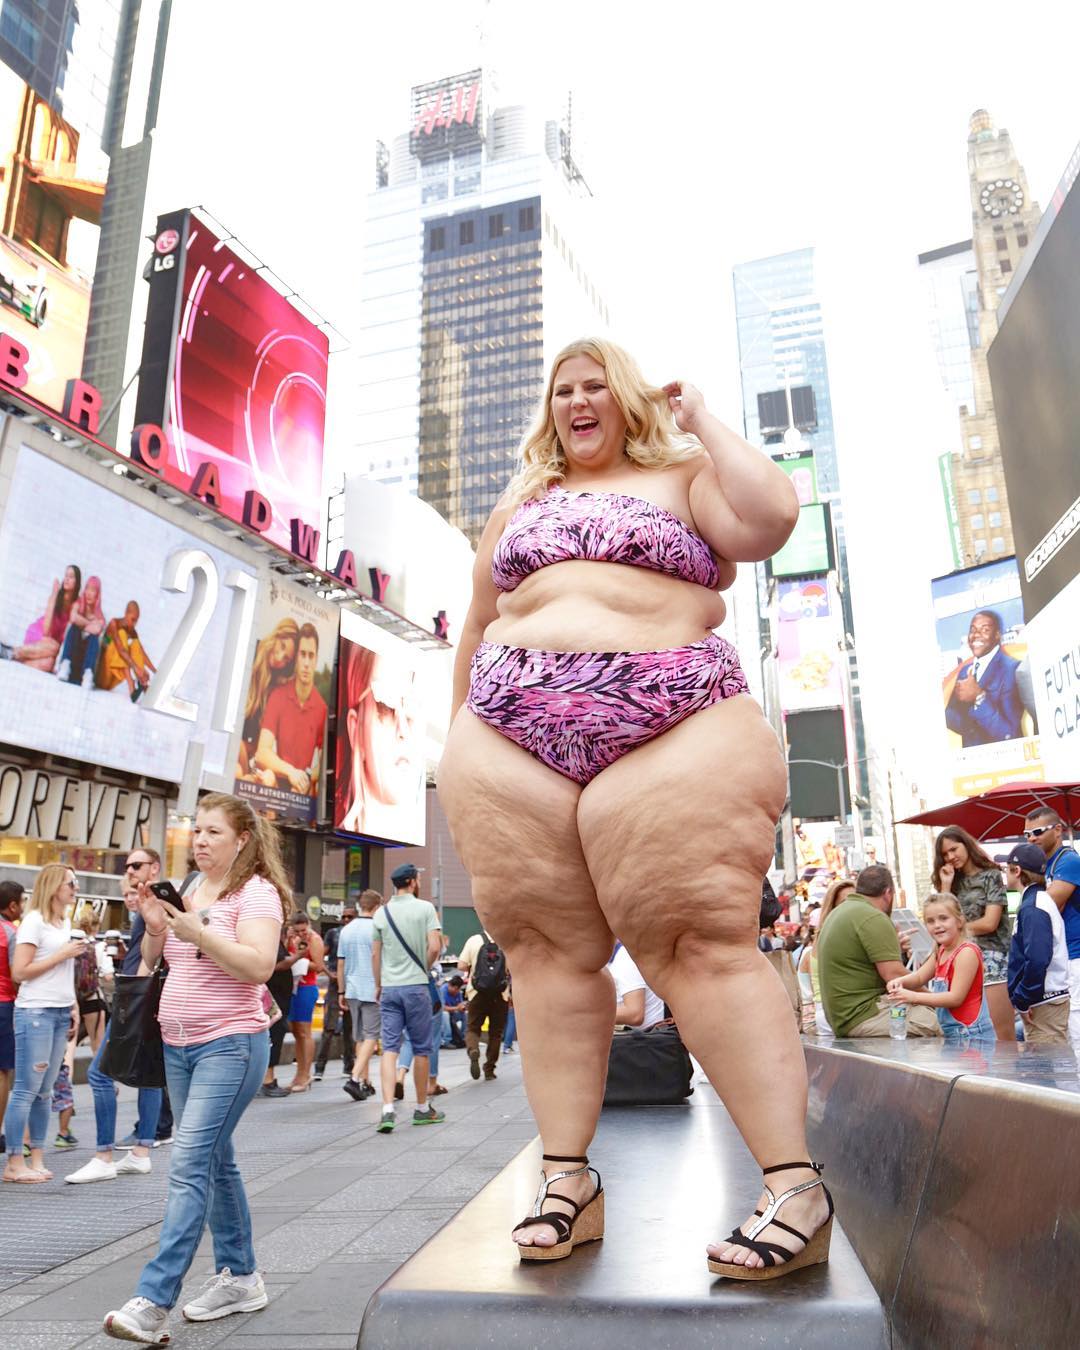 Американская плюс-сайз модель вышла на Таймс-сквер в бикини